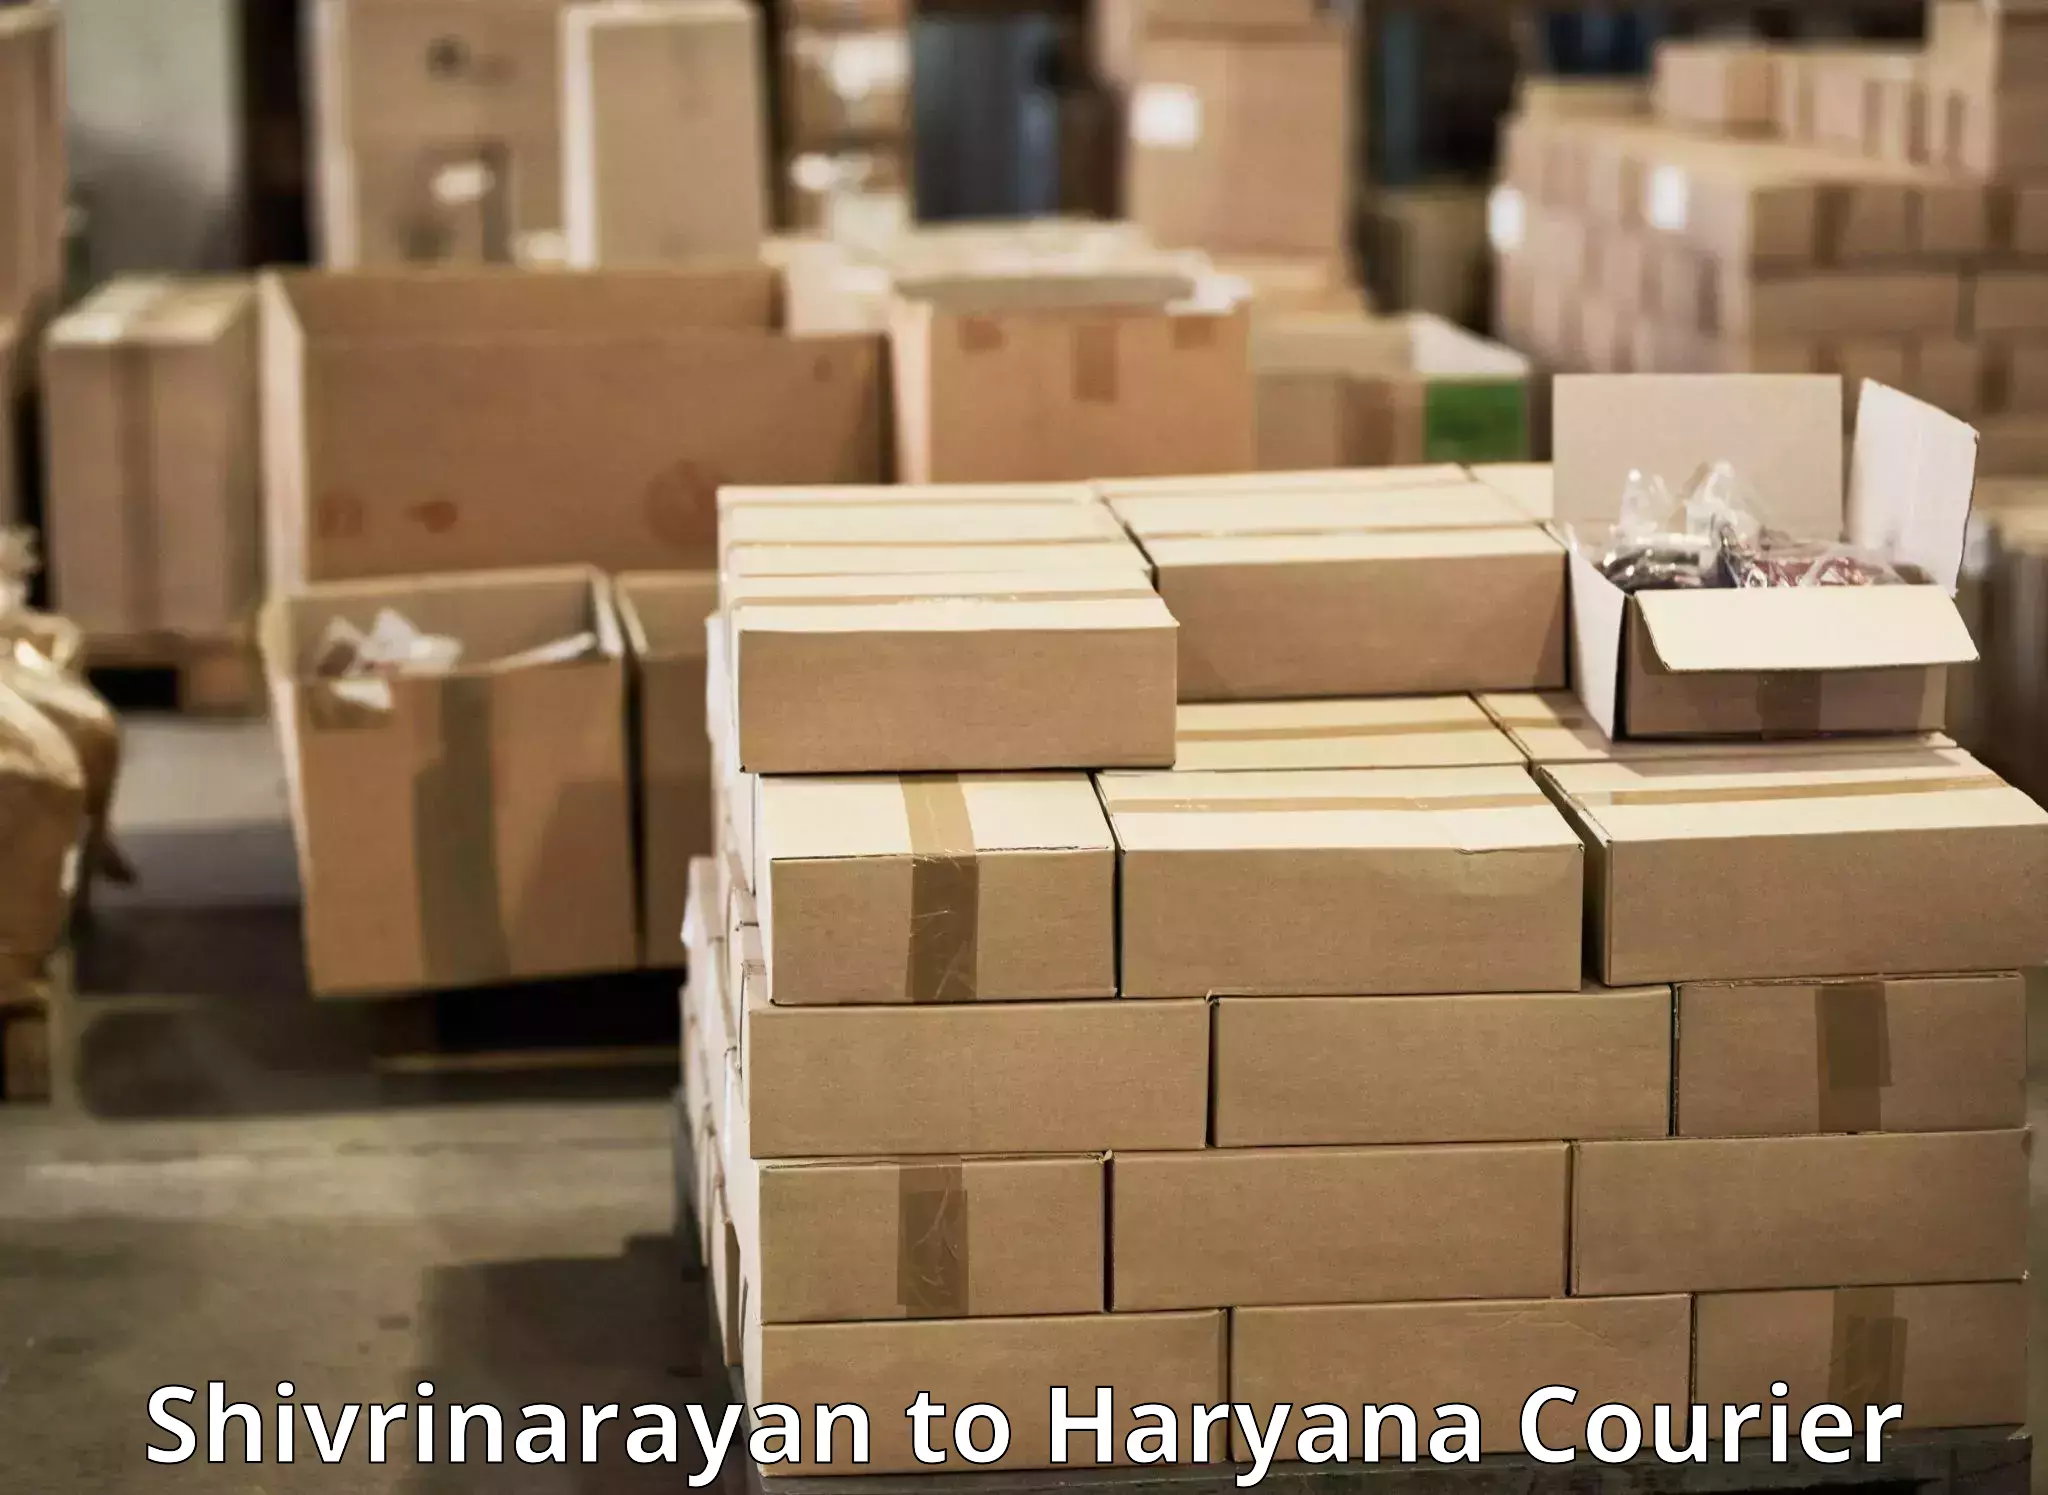 Bulk courier orders in Shivrinarayan to Hansi